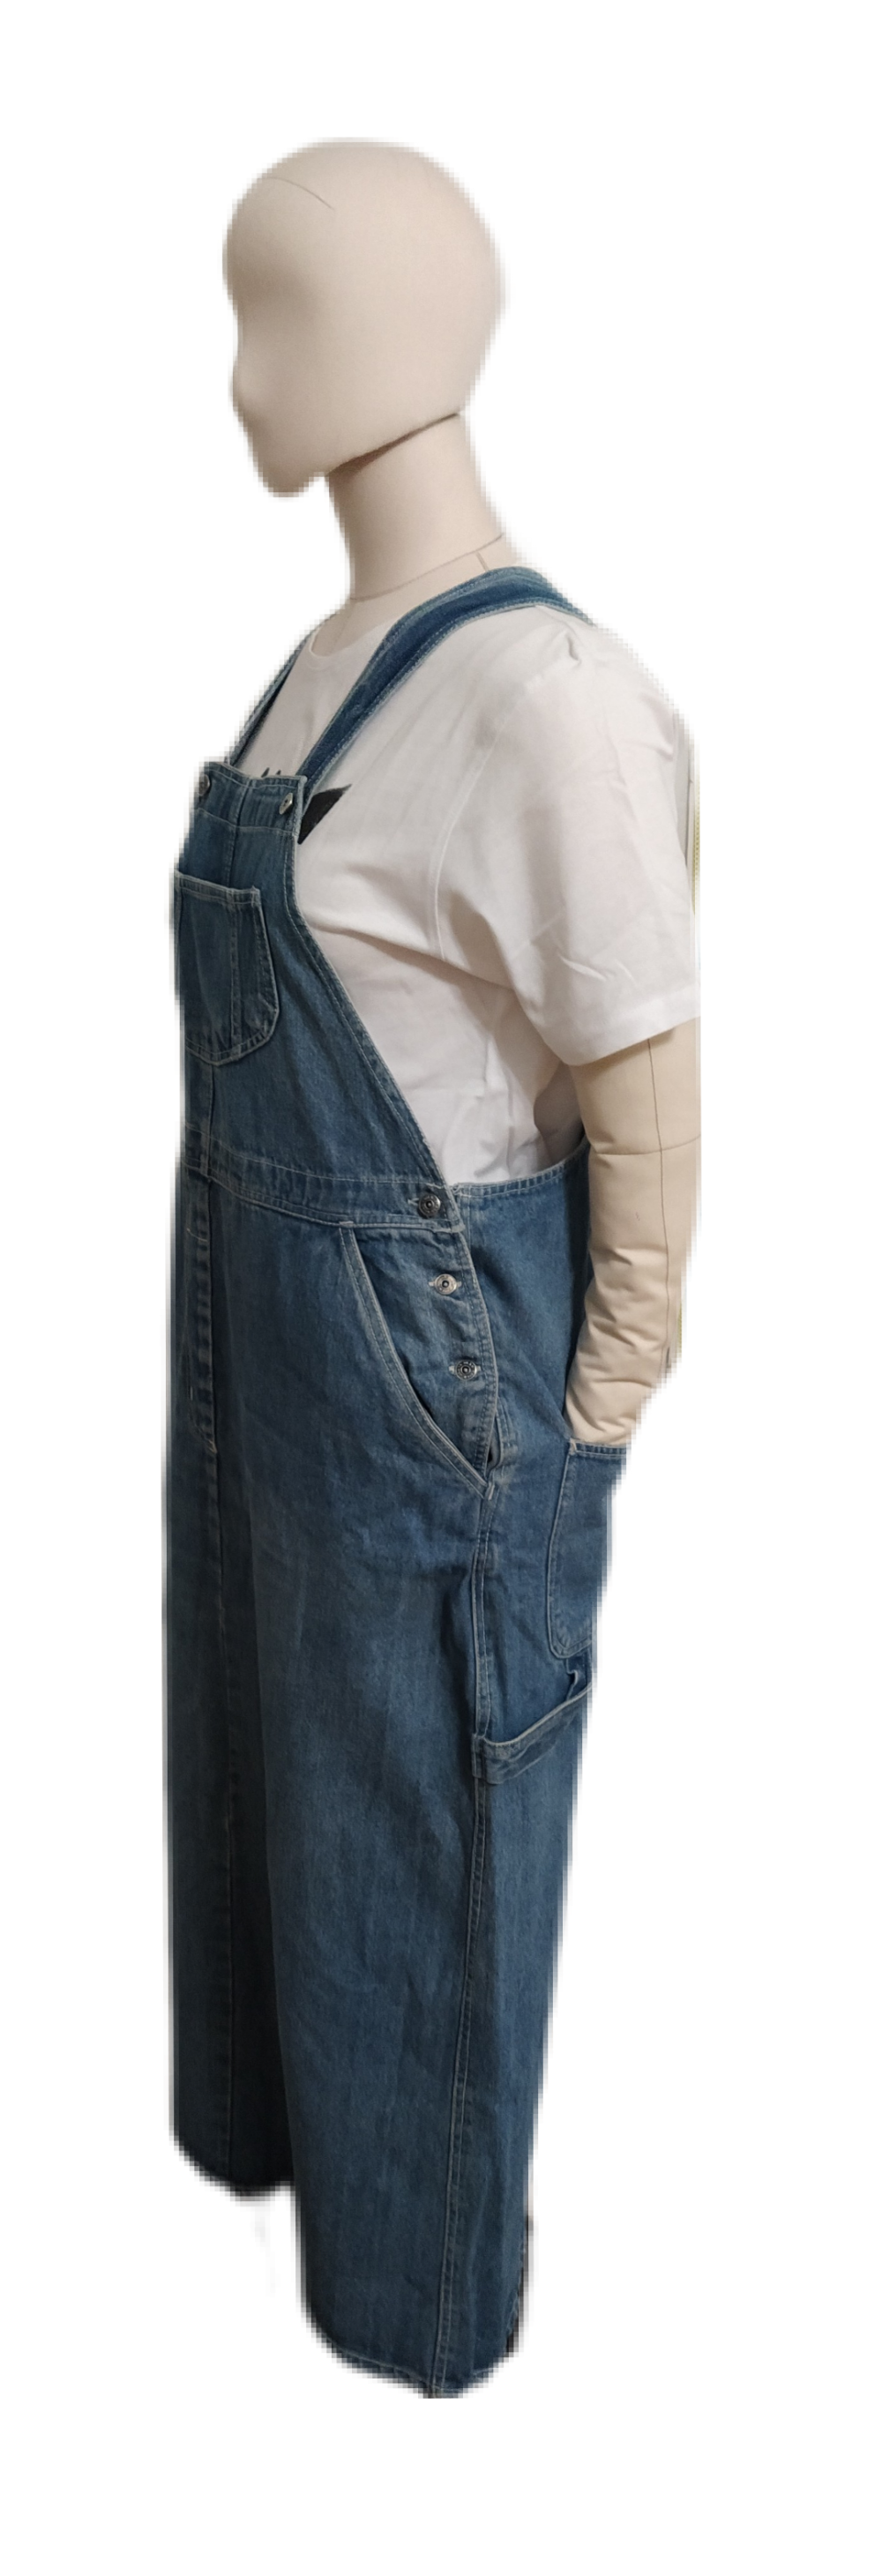 Джинсовый сарафан Street Jeans, L, XL